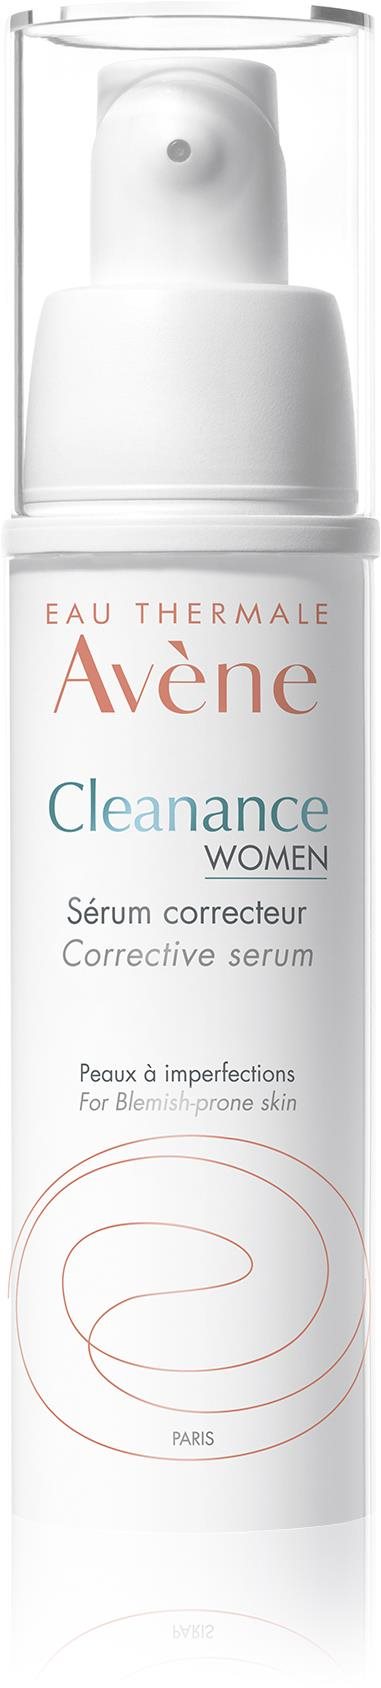 AVENE Cleanance Women Corrective Serum 30 ml